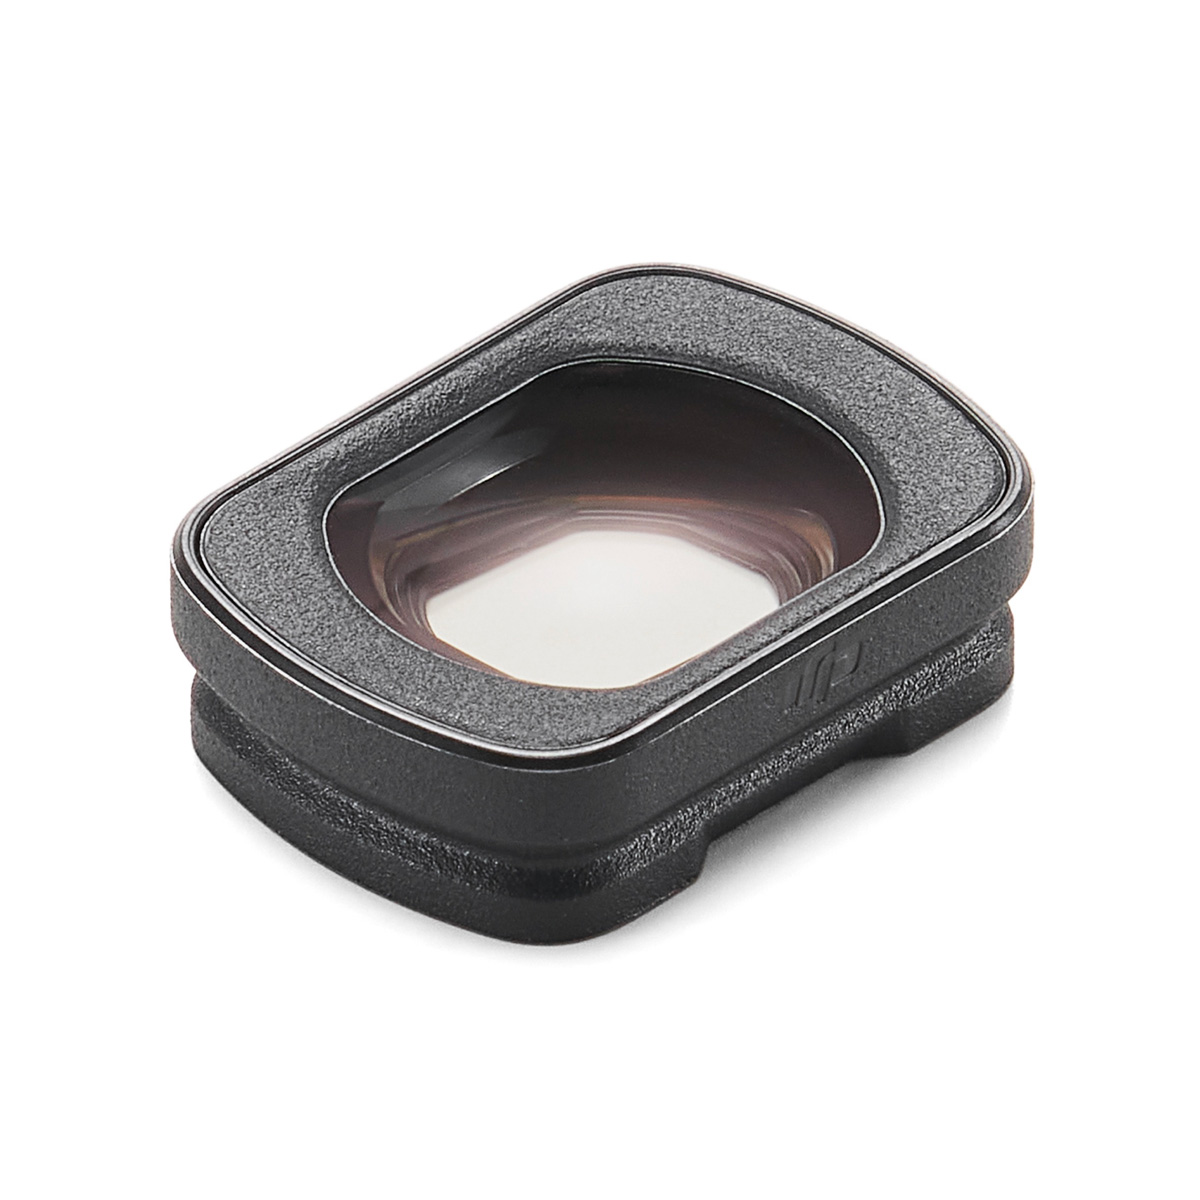 Широкоугольная линза DJI Osmo Pocket 3 Wide-Angle Lens